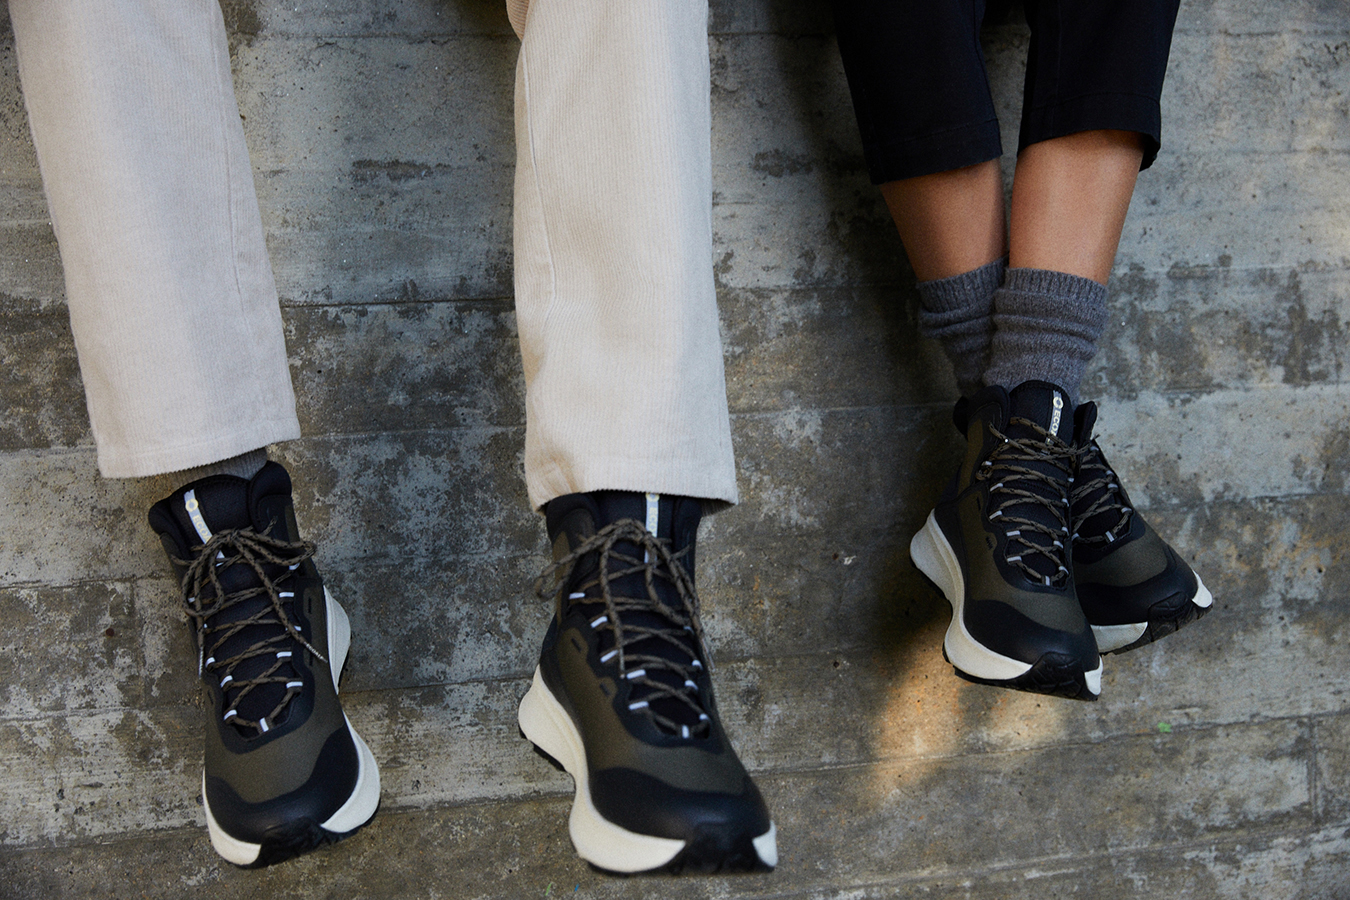 Ecoalf y Michelin han desarrollado conjuntamente una suela de zapato fabricada con el caucho “desperdiciado” en la producción de suelas convencionales.